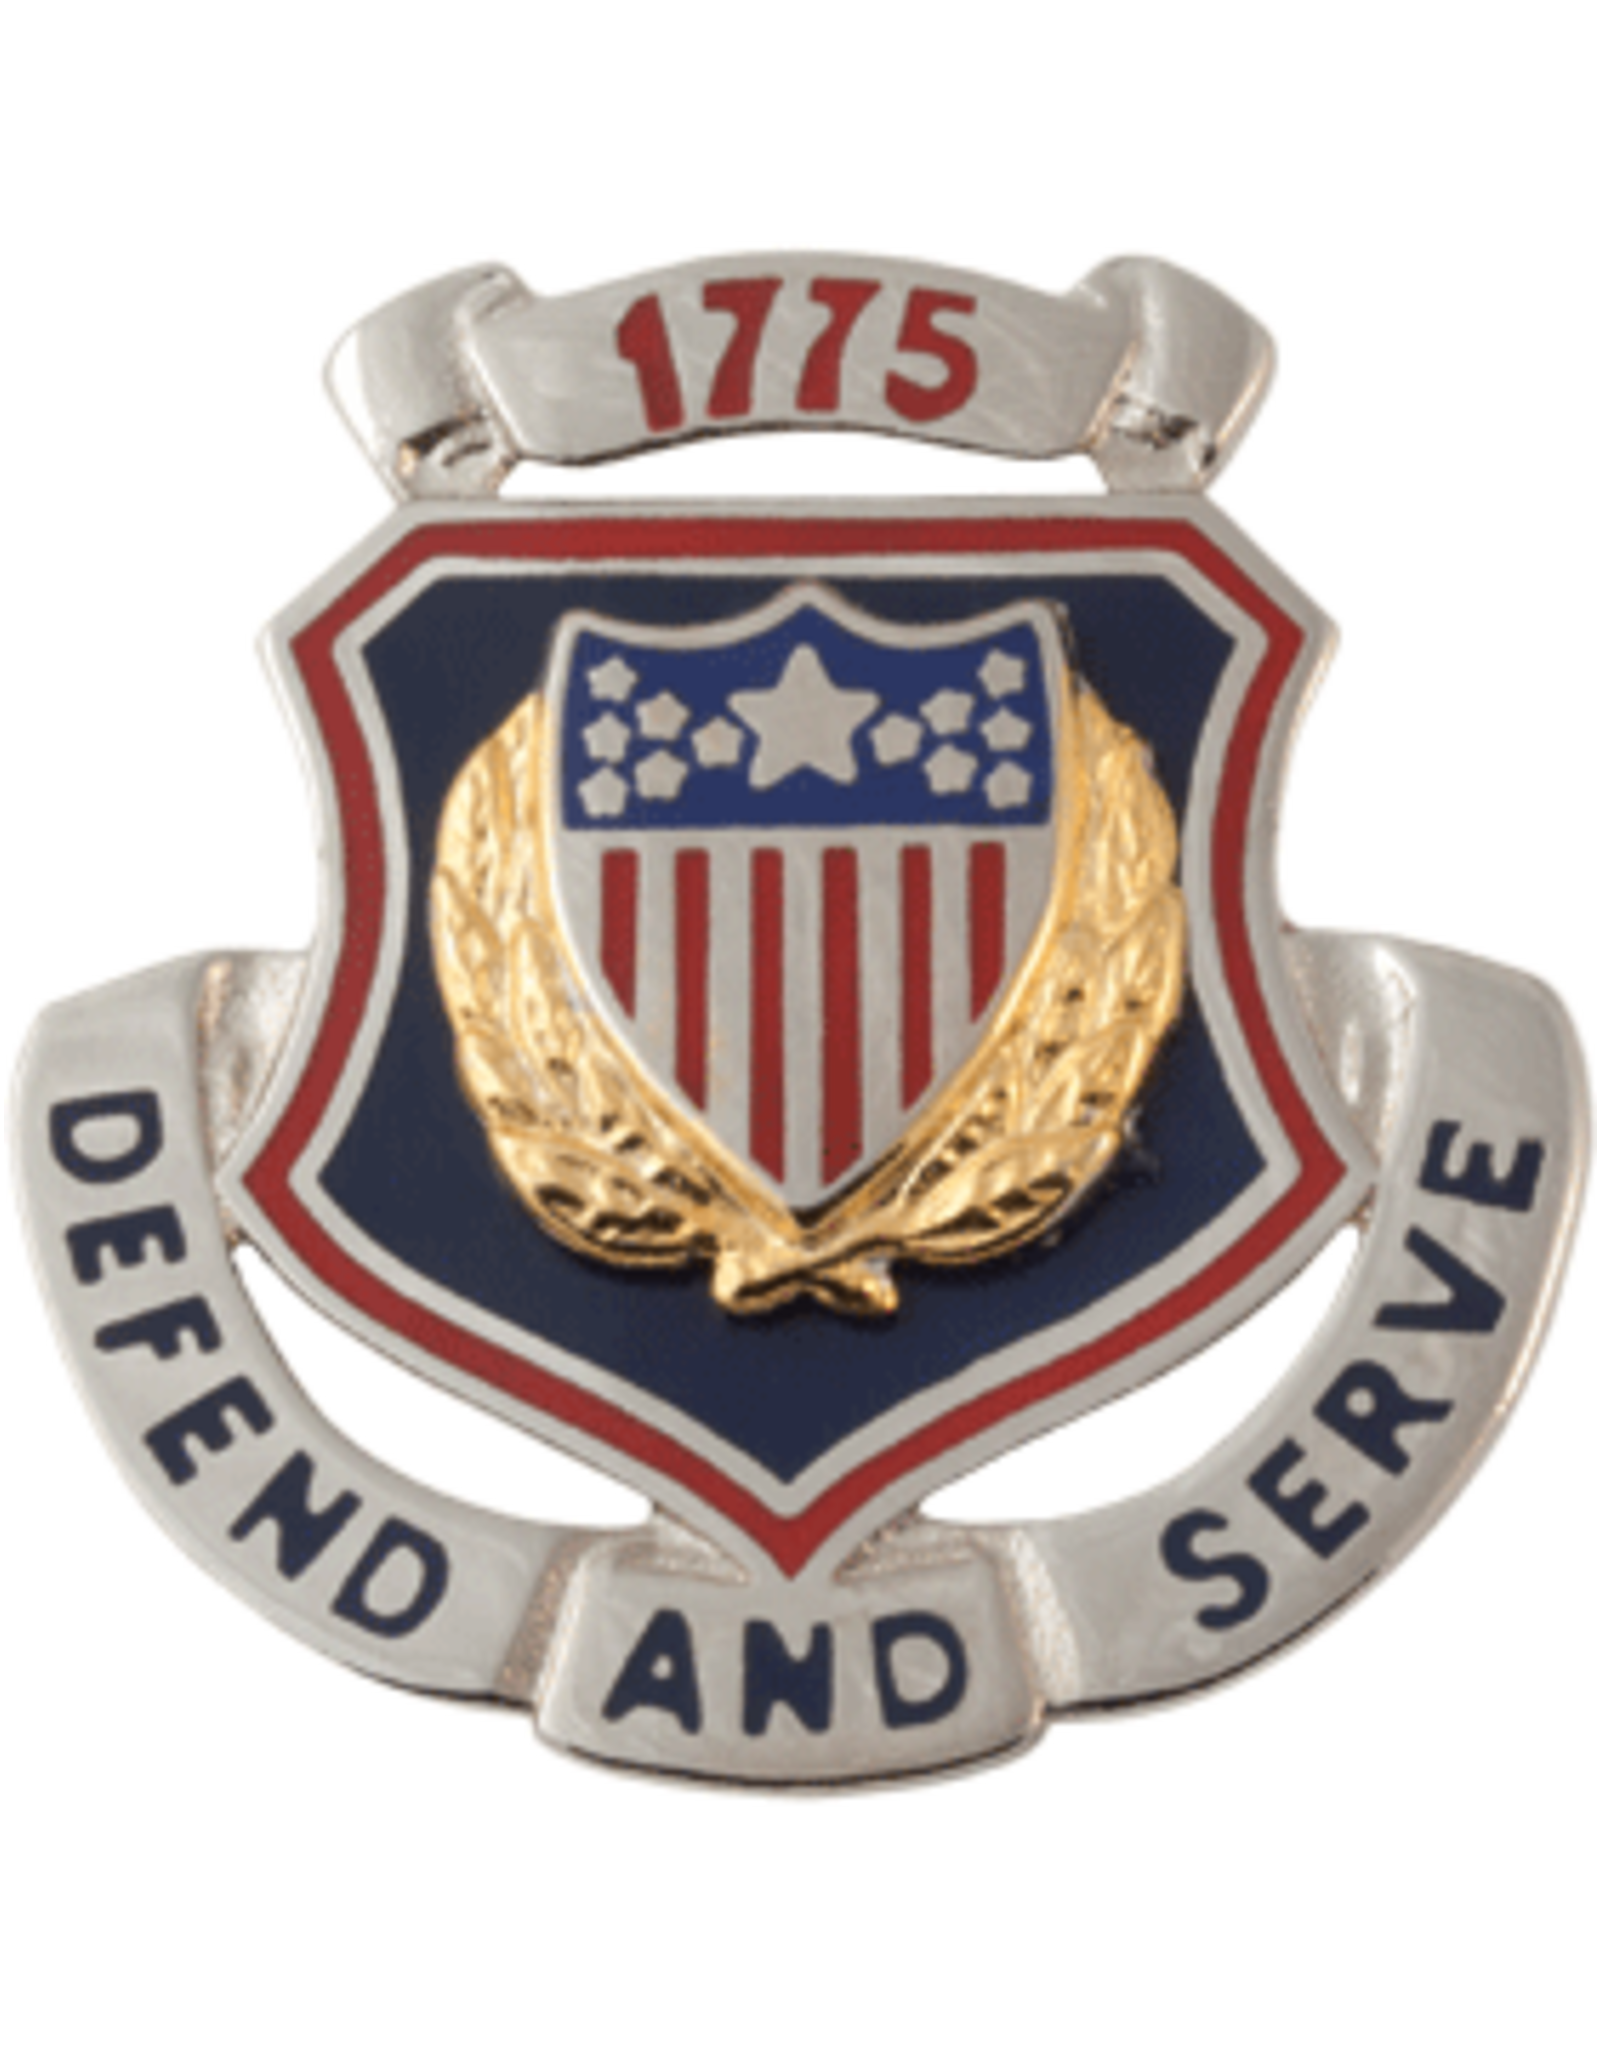 Adjutant General Regimental Crest - Defend And Serve